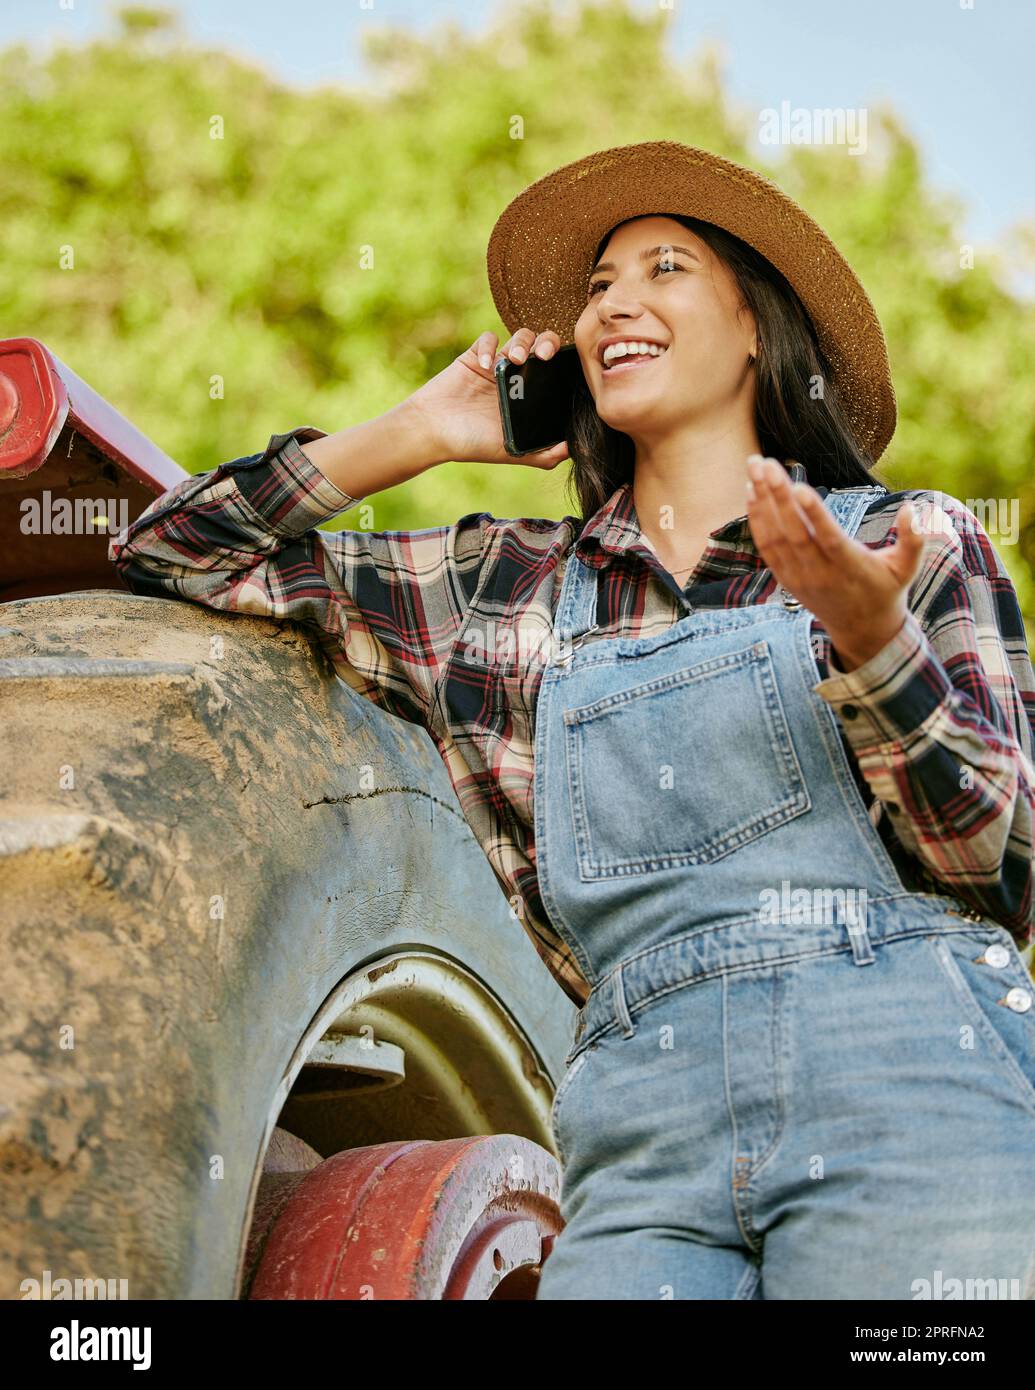 Agricoltura, sostenibilità e agricoltore che parla al telefono mentre lavora in un'azienda agricola con un trattore. Benessere, salute e agro donna networking con un cellulare mentre si trova su un campo in campagna. Foto Stock